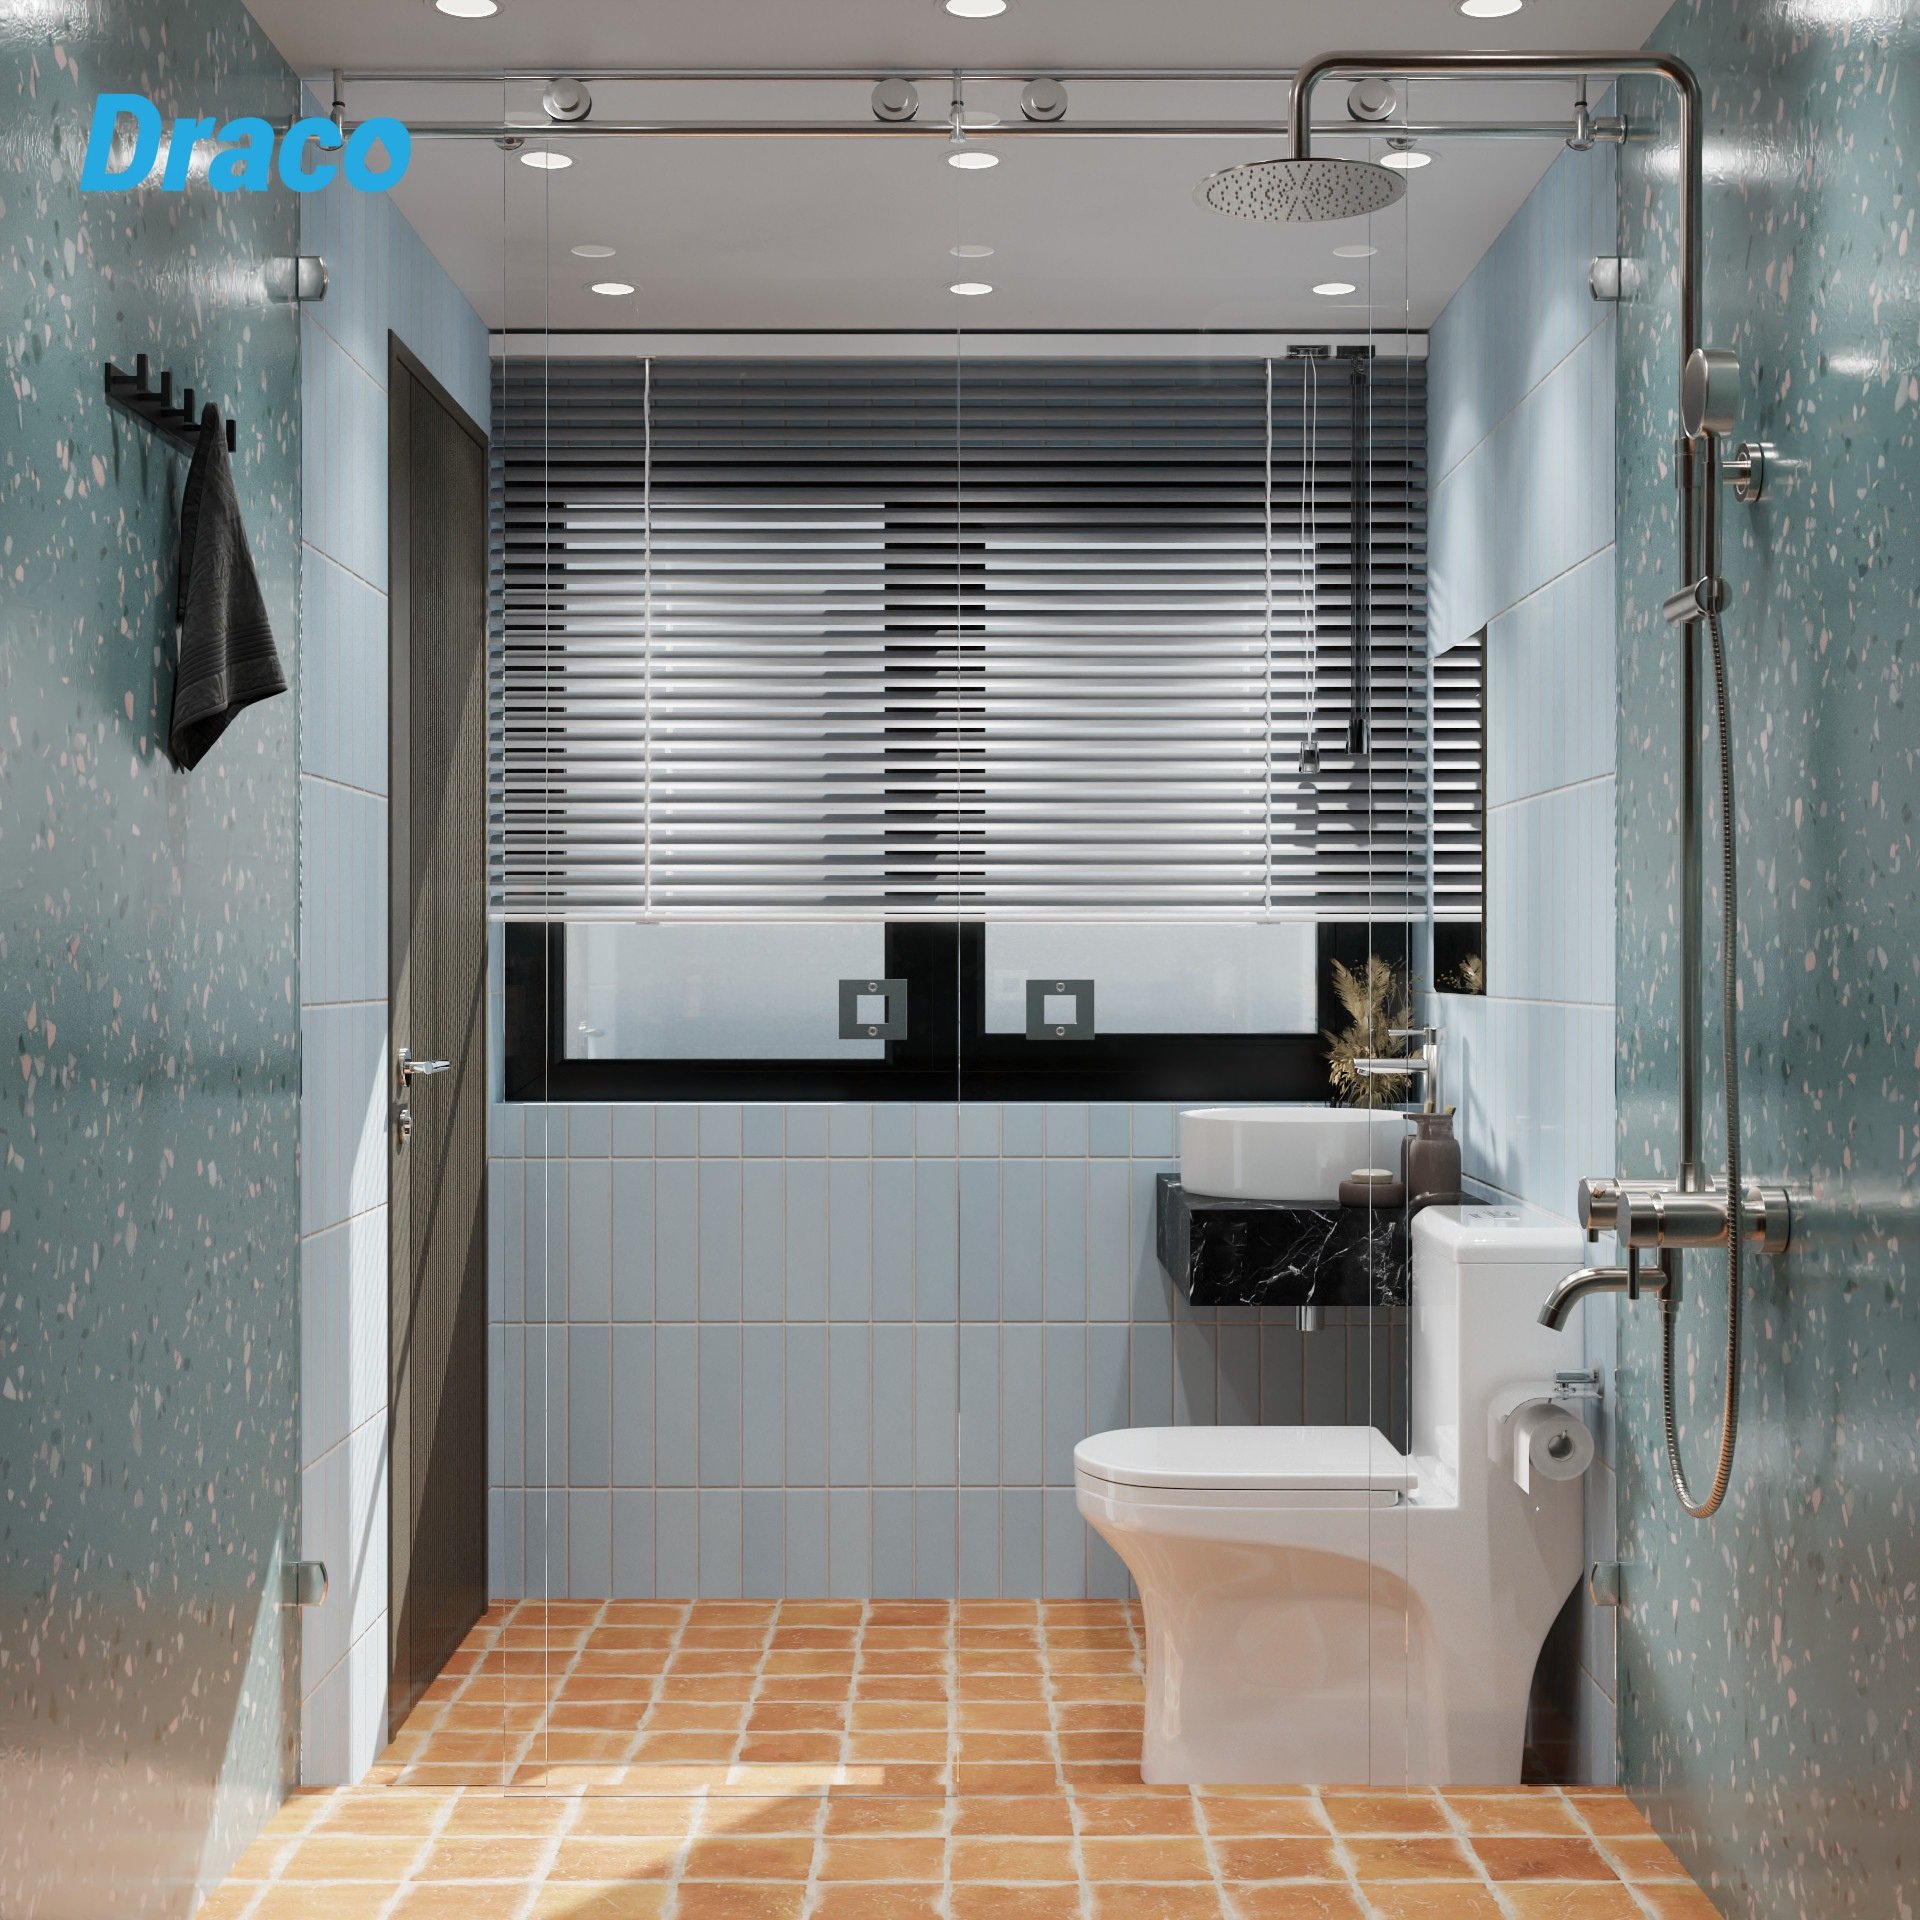 Draco - cung cấp thiết bị vệ sinh phòng tắm uy tín, chất lượng.